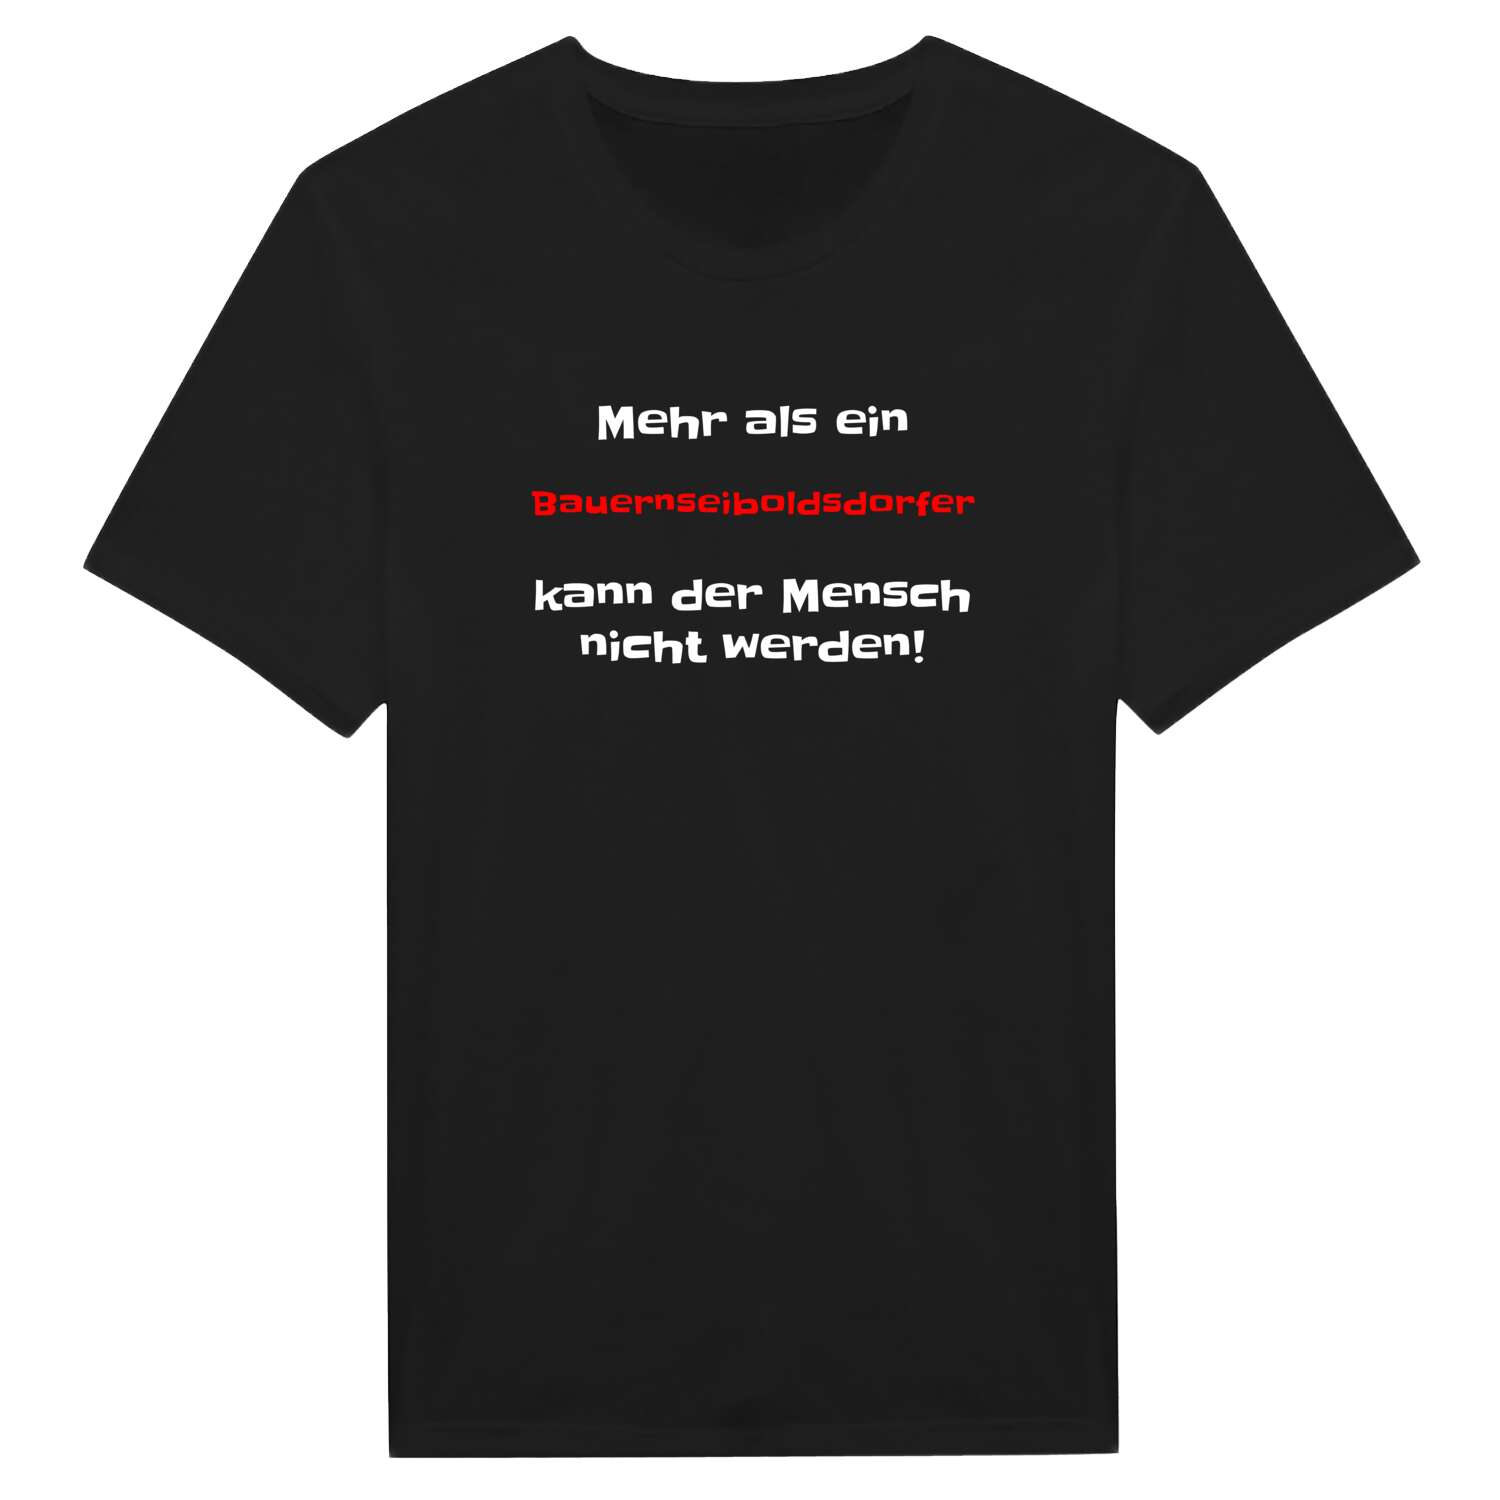 Bauernseiboldsdorf T-Shirt »Mehr als ein«